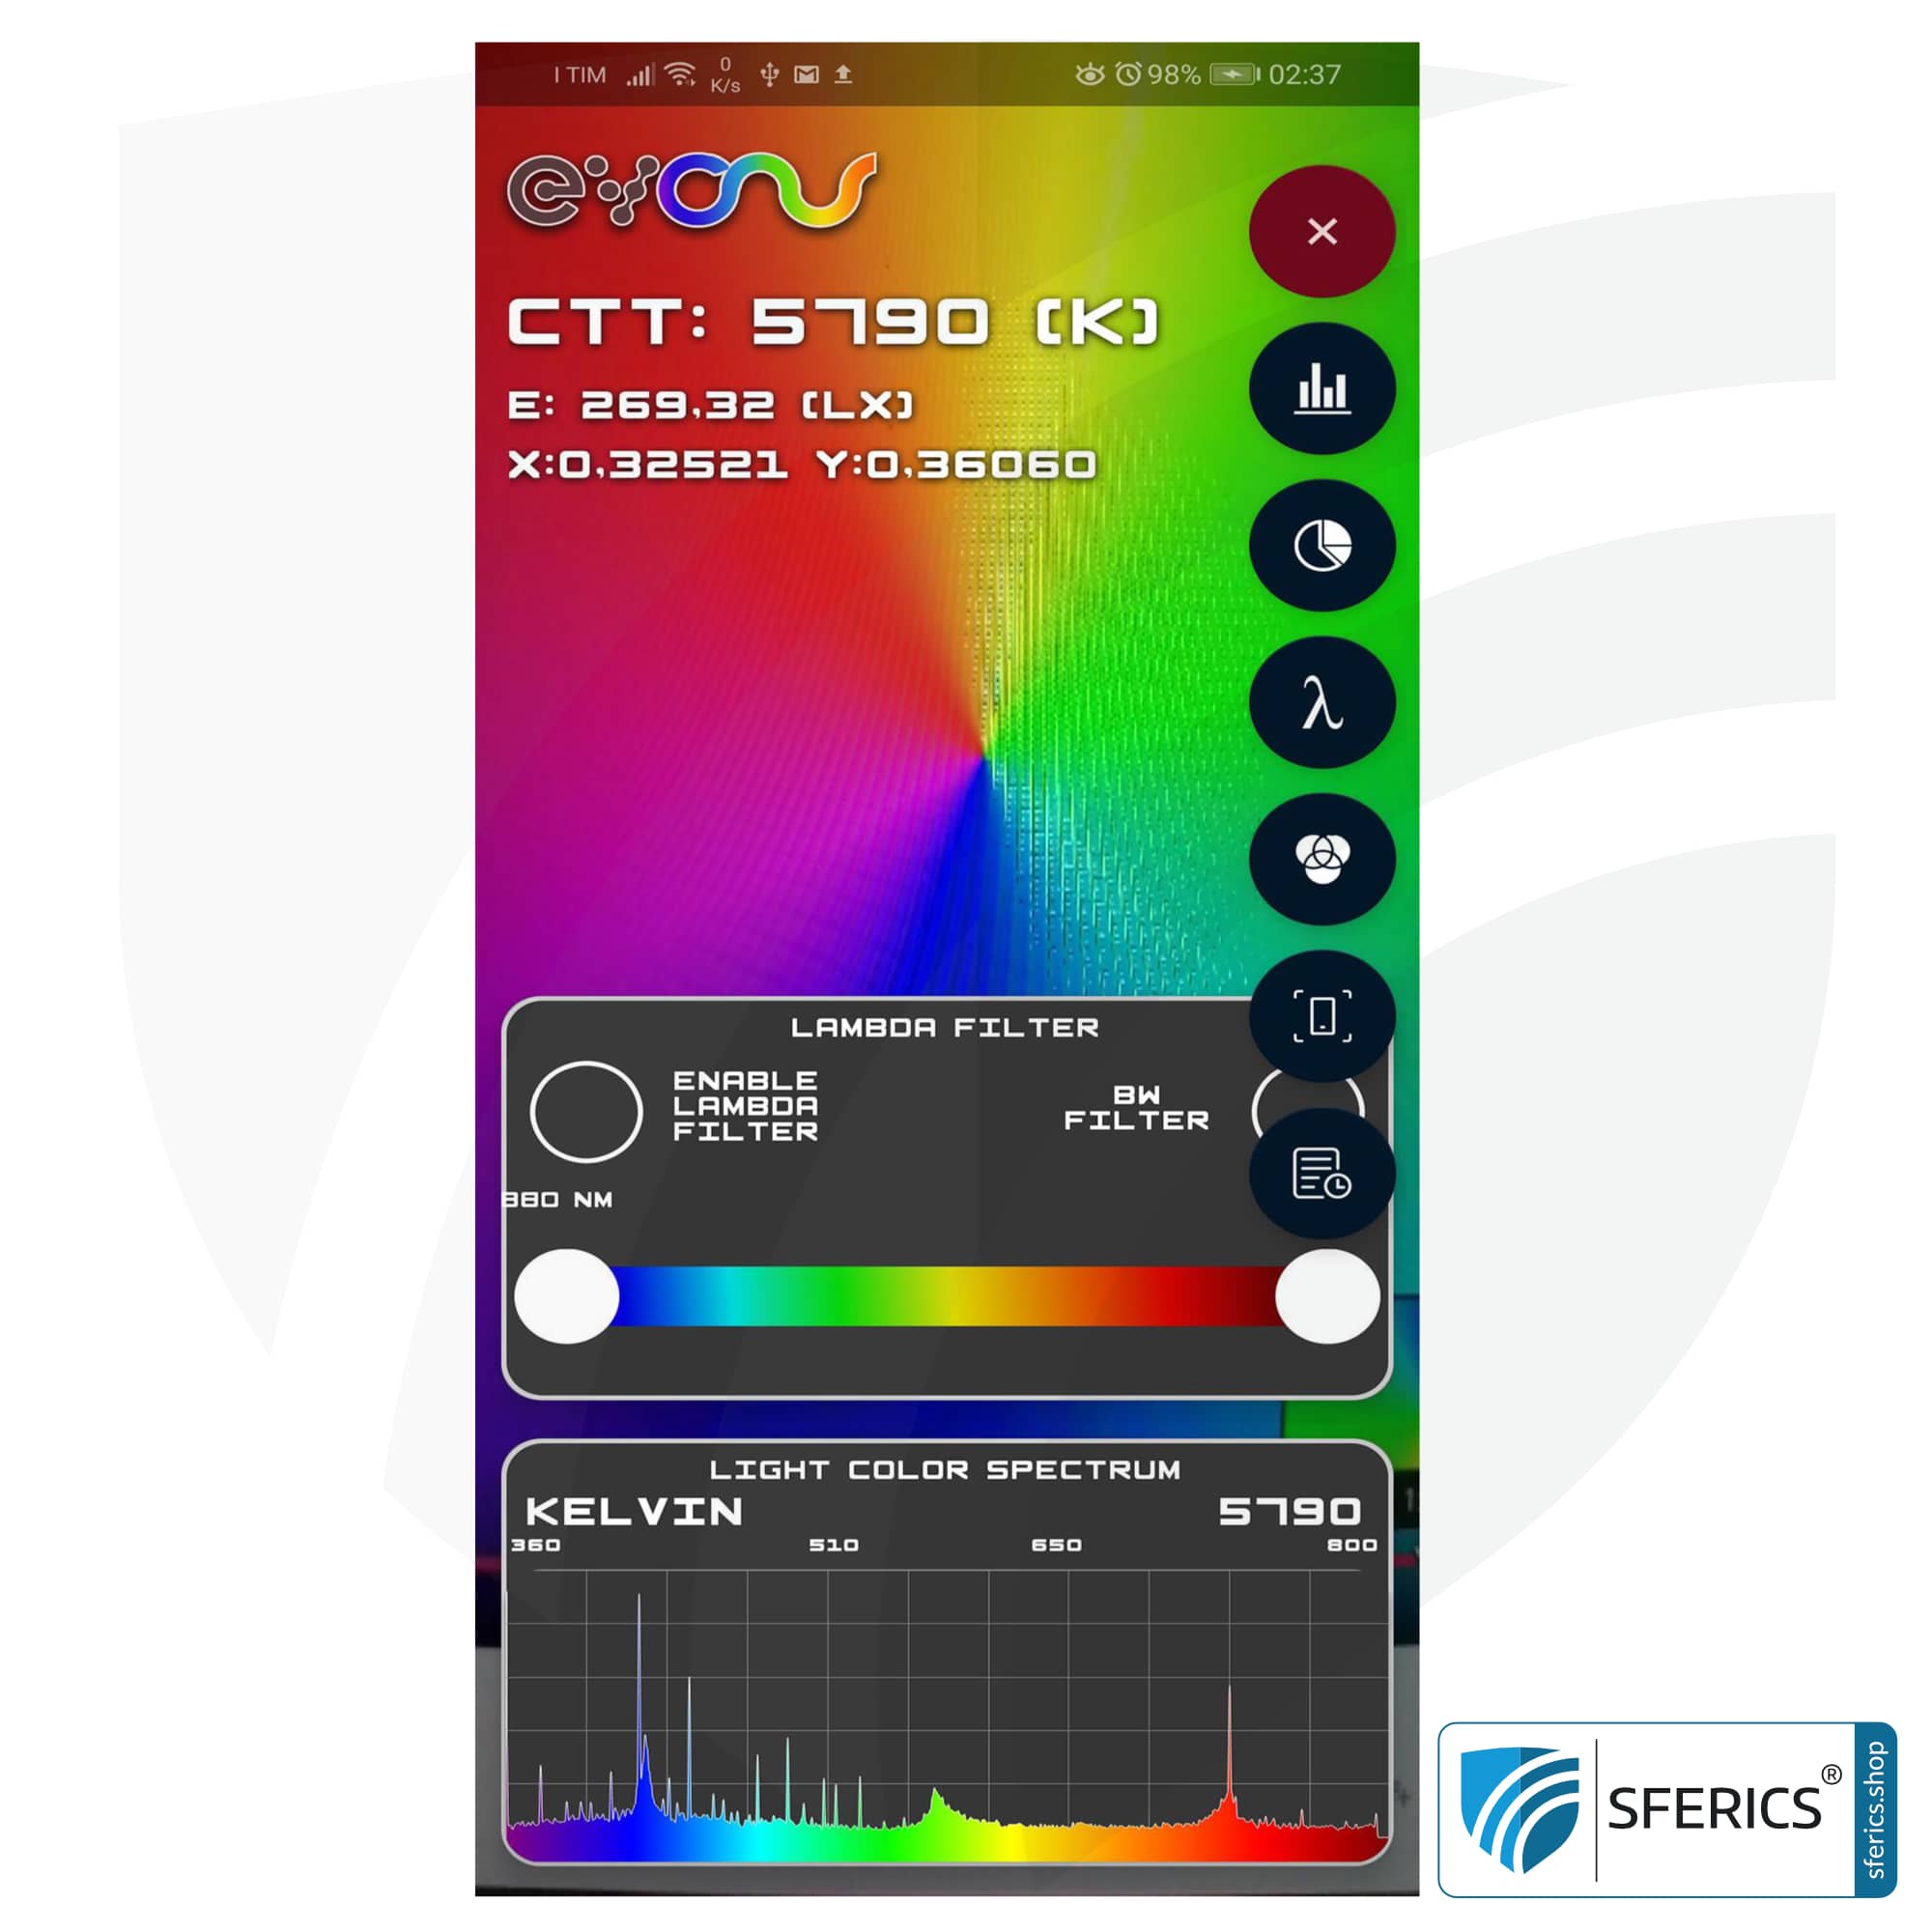 Lightspectrum Pro EVO für Android | Messung vom Lichspektrum | Farbtemperatur (Kelvin) und Wellenlängen, CRI, Lux, u.v.m.